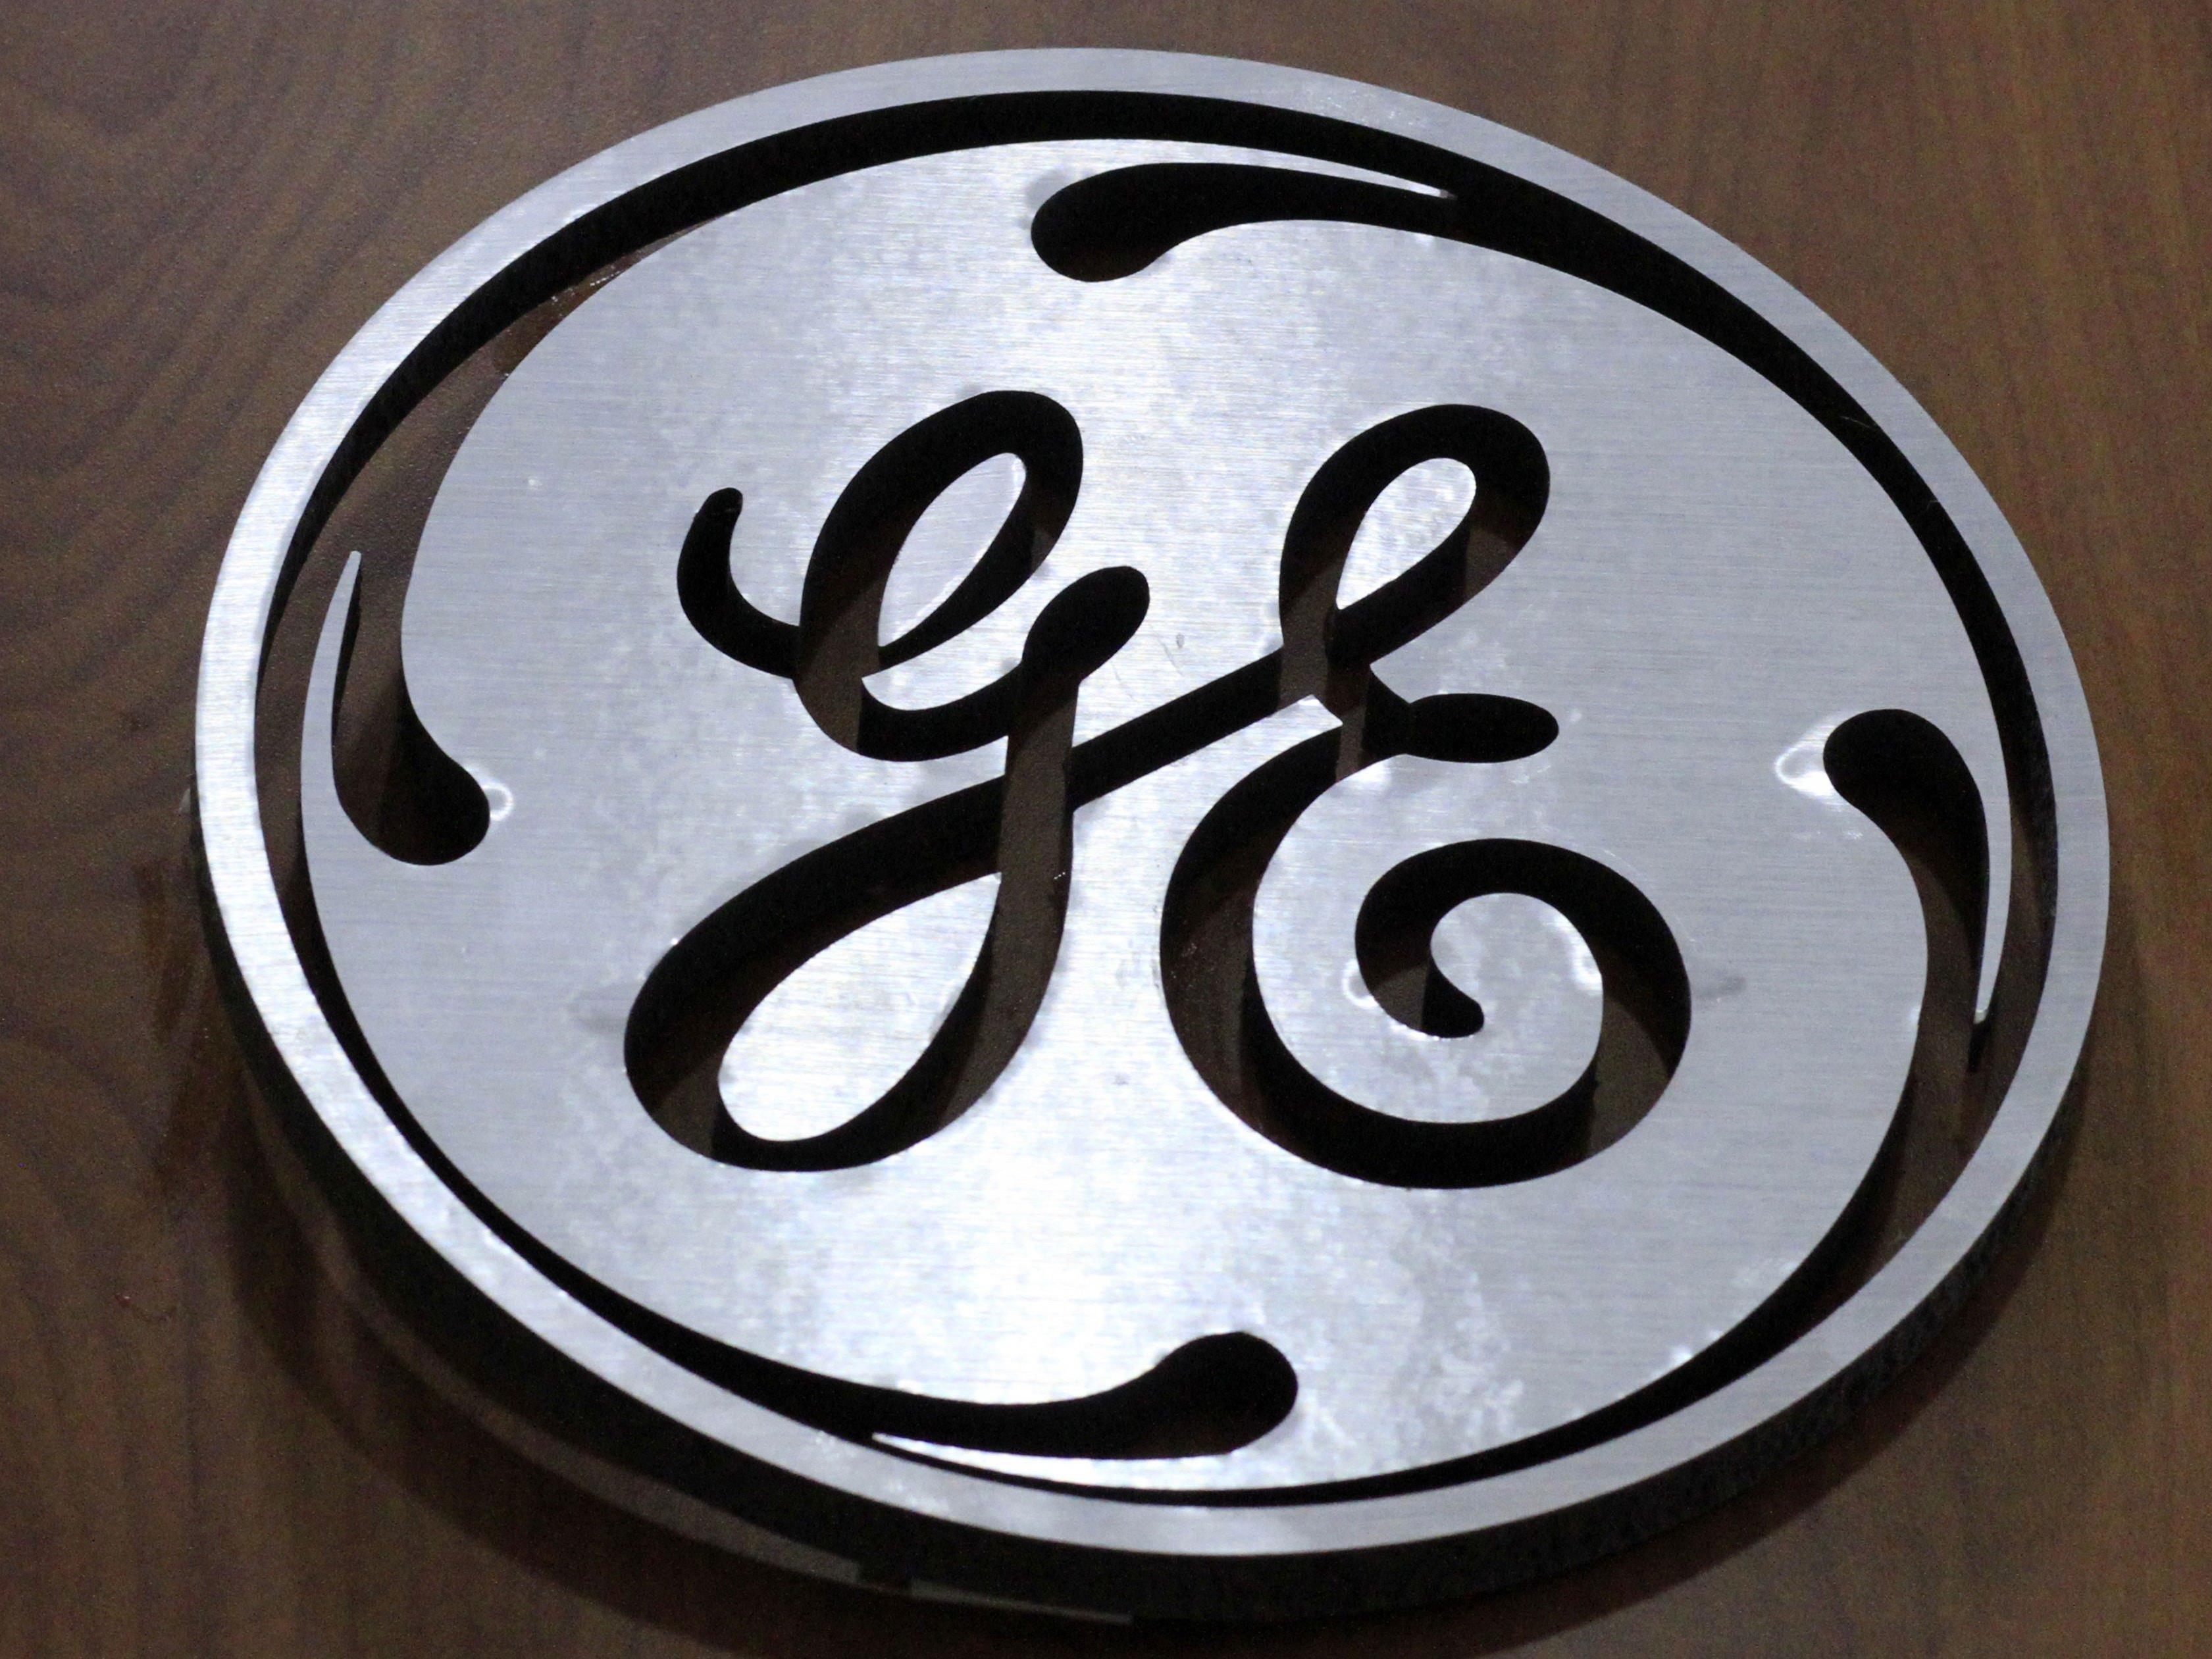 Bei General Electric in Wien müssen 40 Mitarbeiter gehen.